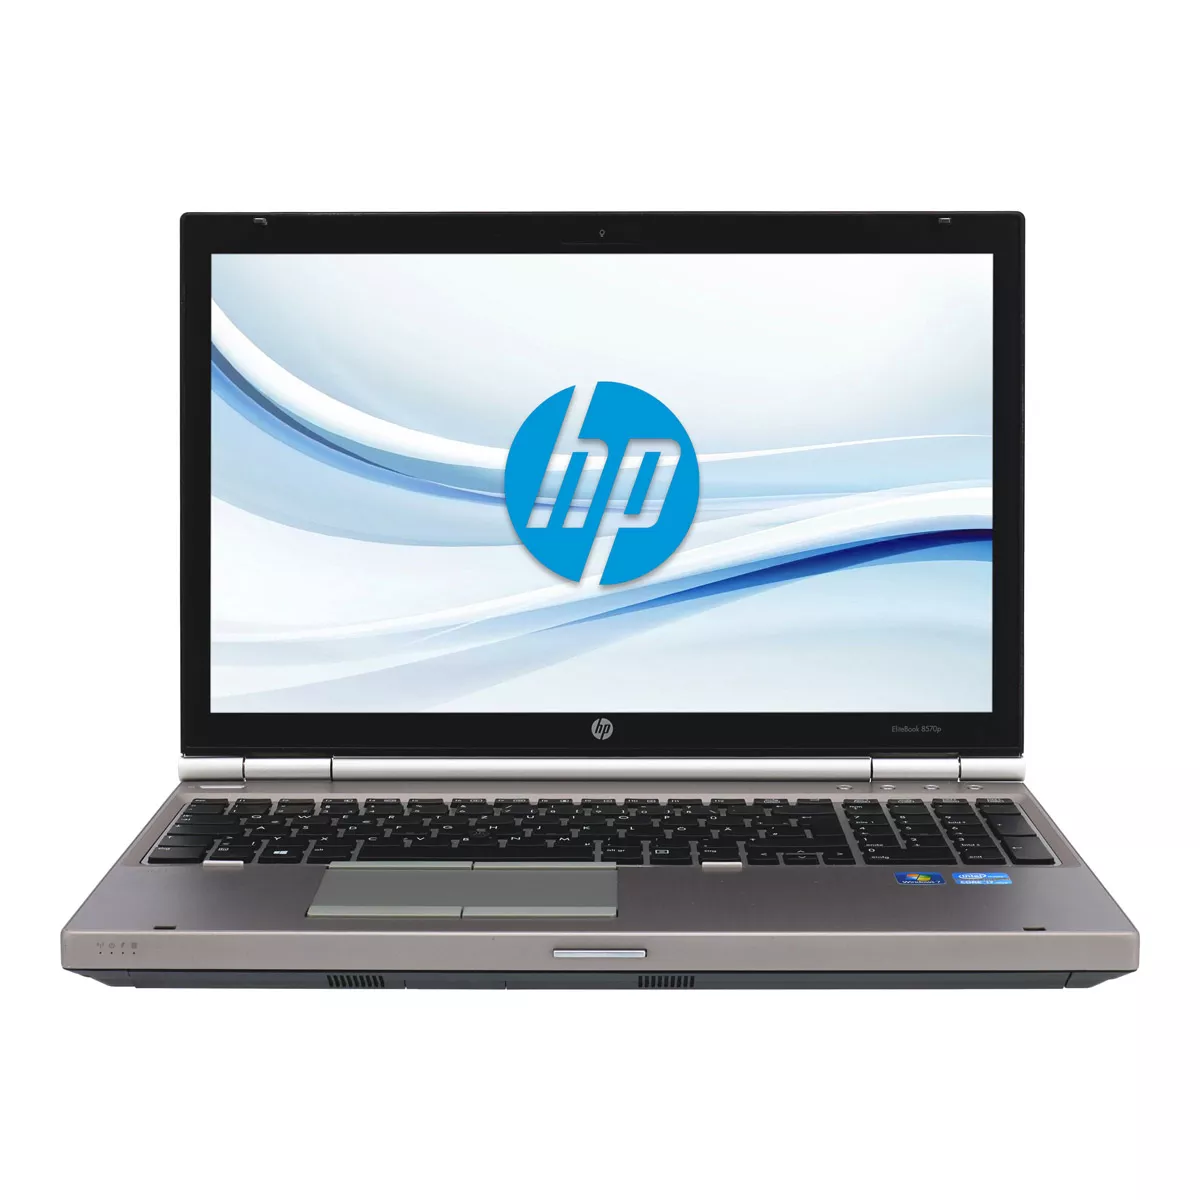 HP Elitebook 8570p Core i7 3520M HD+ 8 GB 256 GB SSD